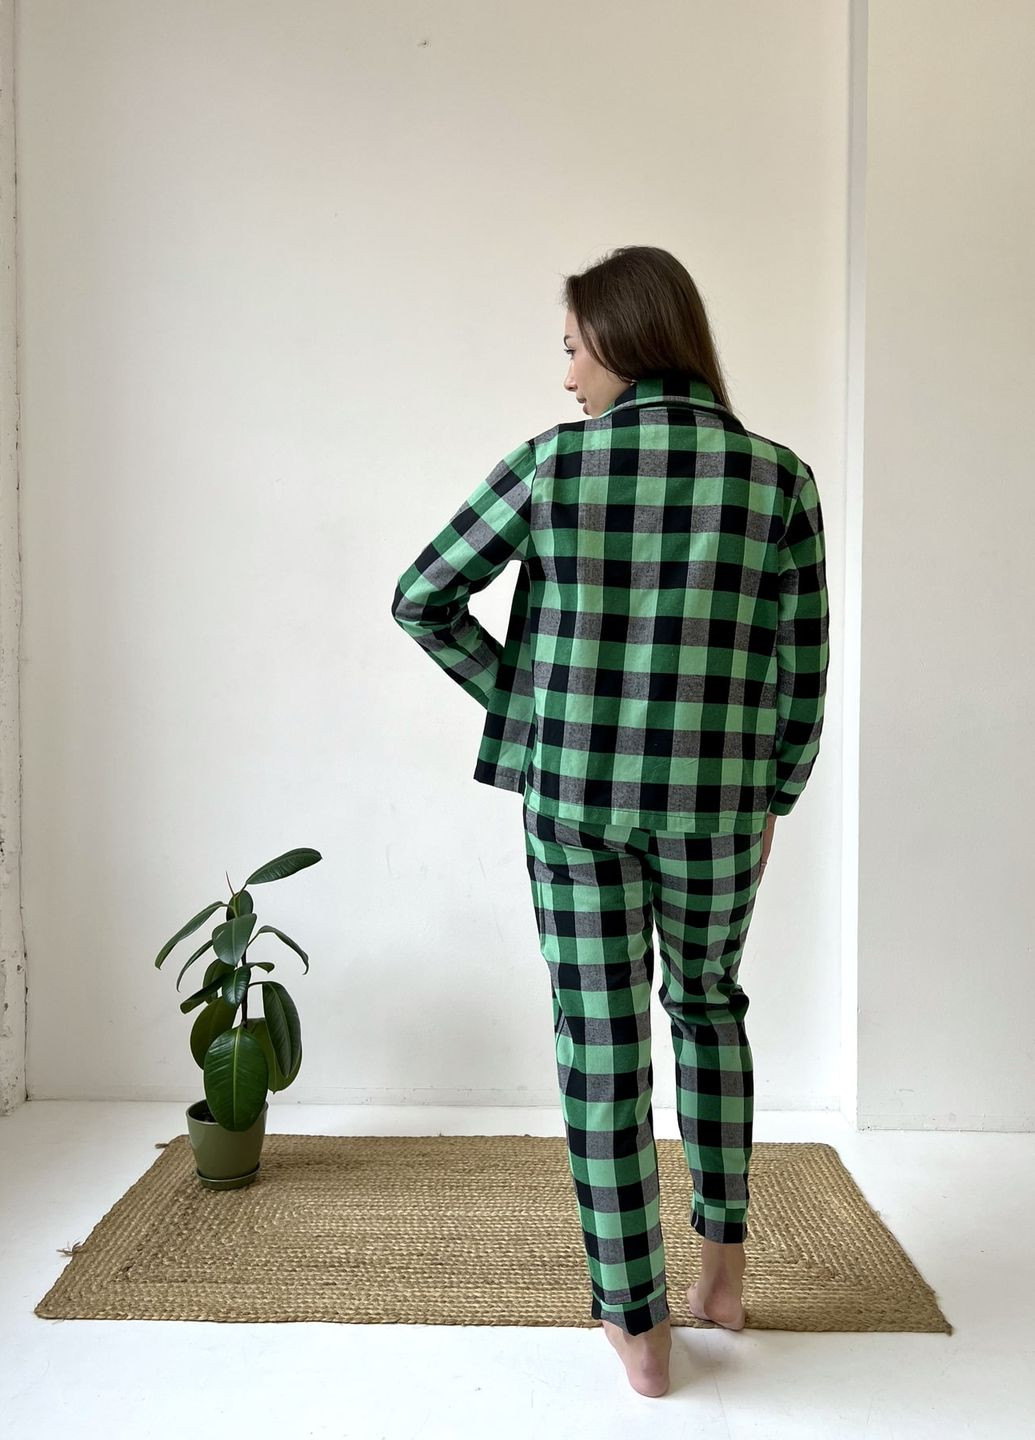 Зелена зимня домашня жіноча піжама 3-ка у клітинку зелено/чорна кофта + футболка + брюки Cosy